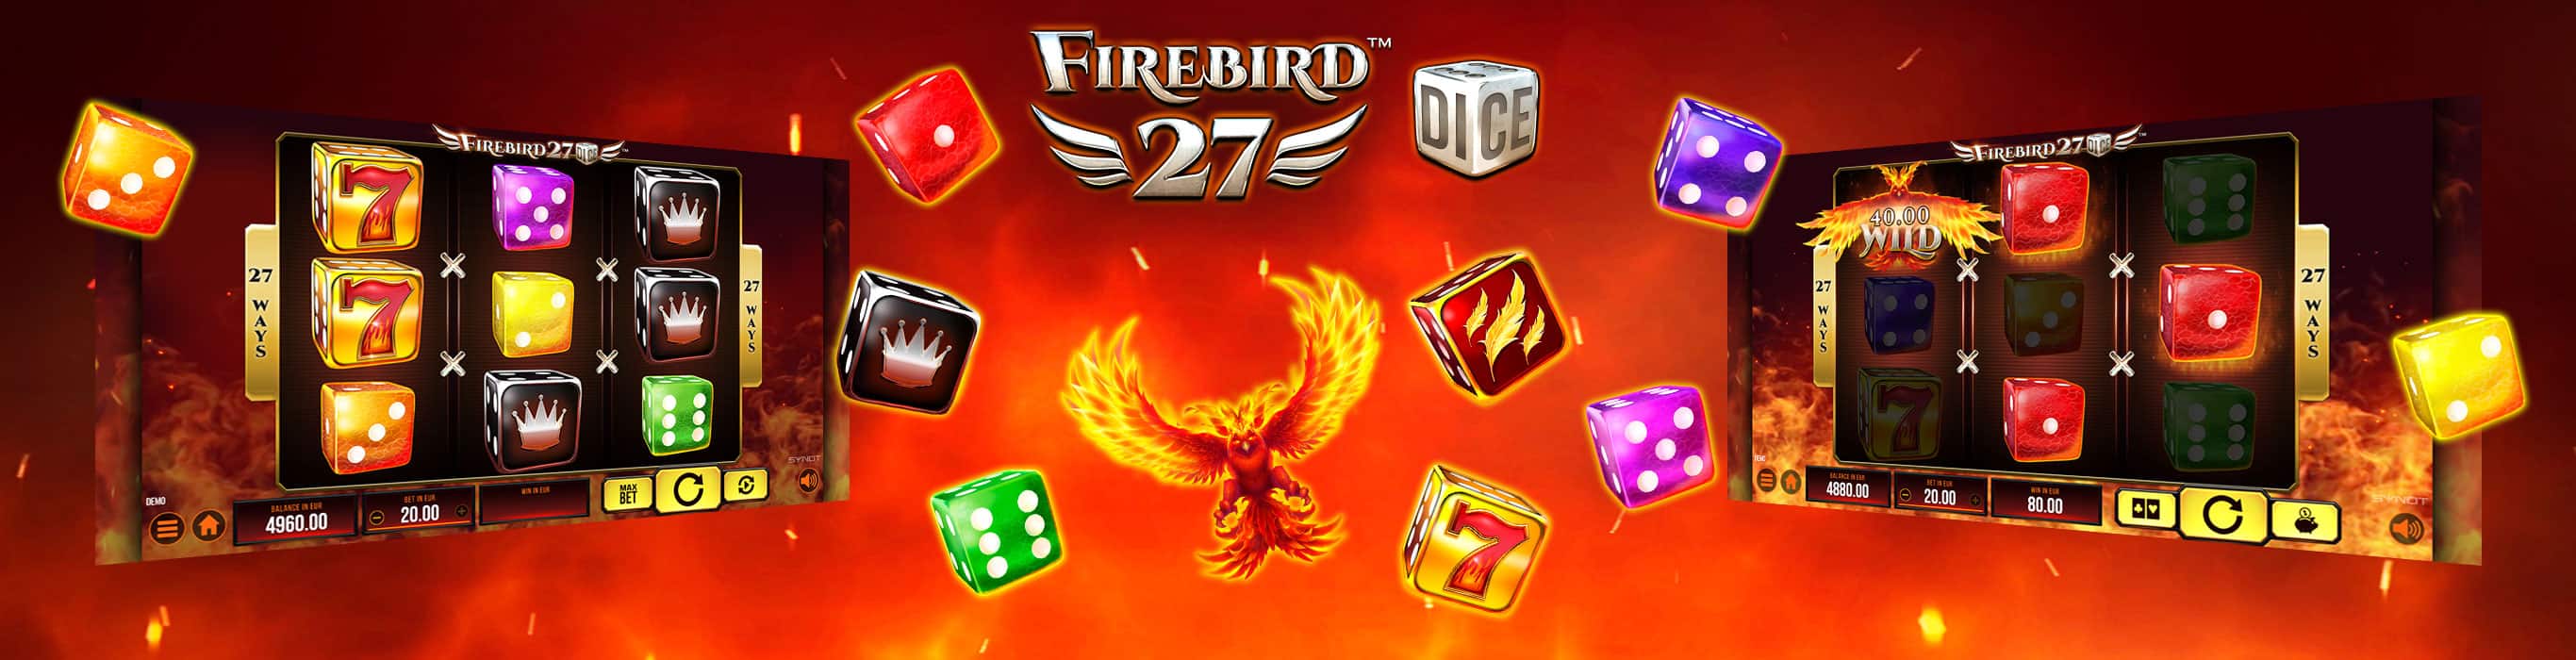 firebird27dice-pg-banner-2732x700